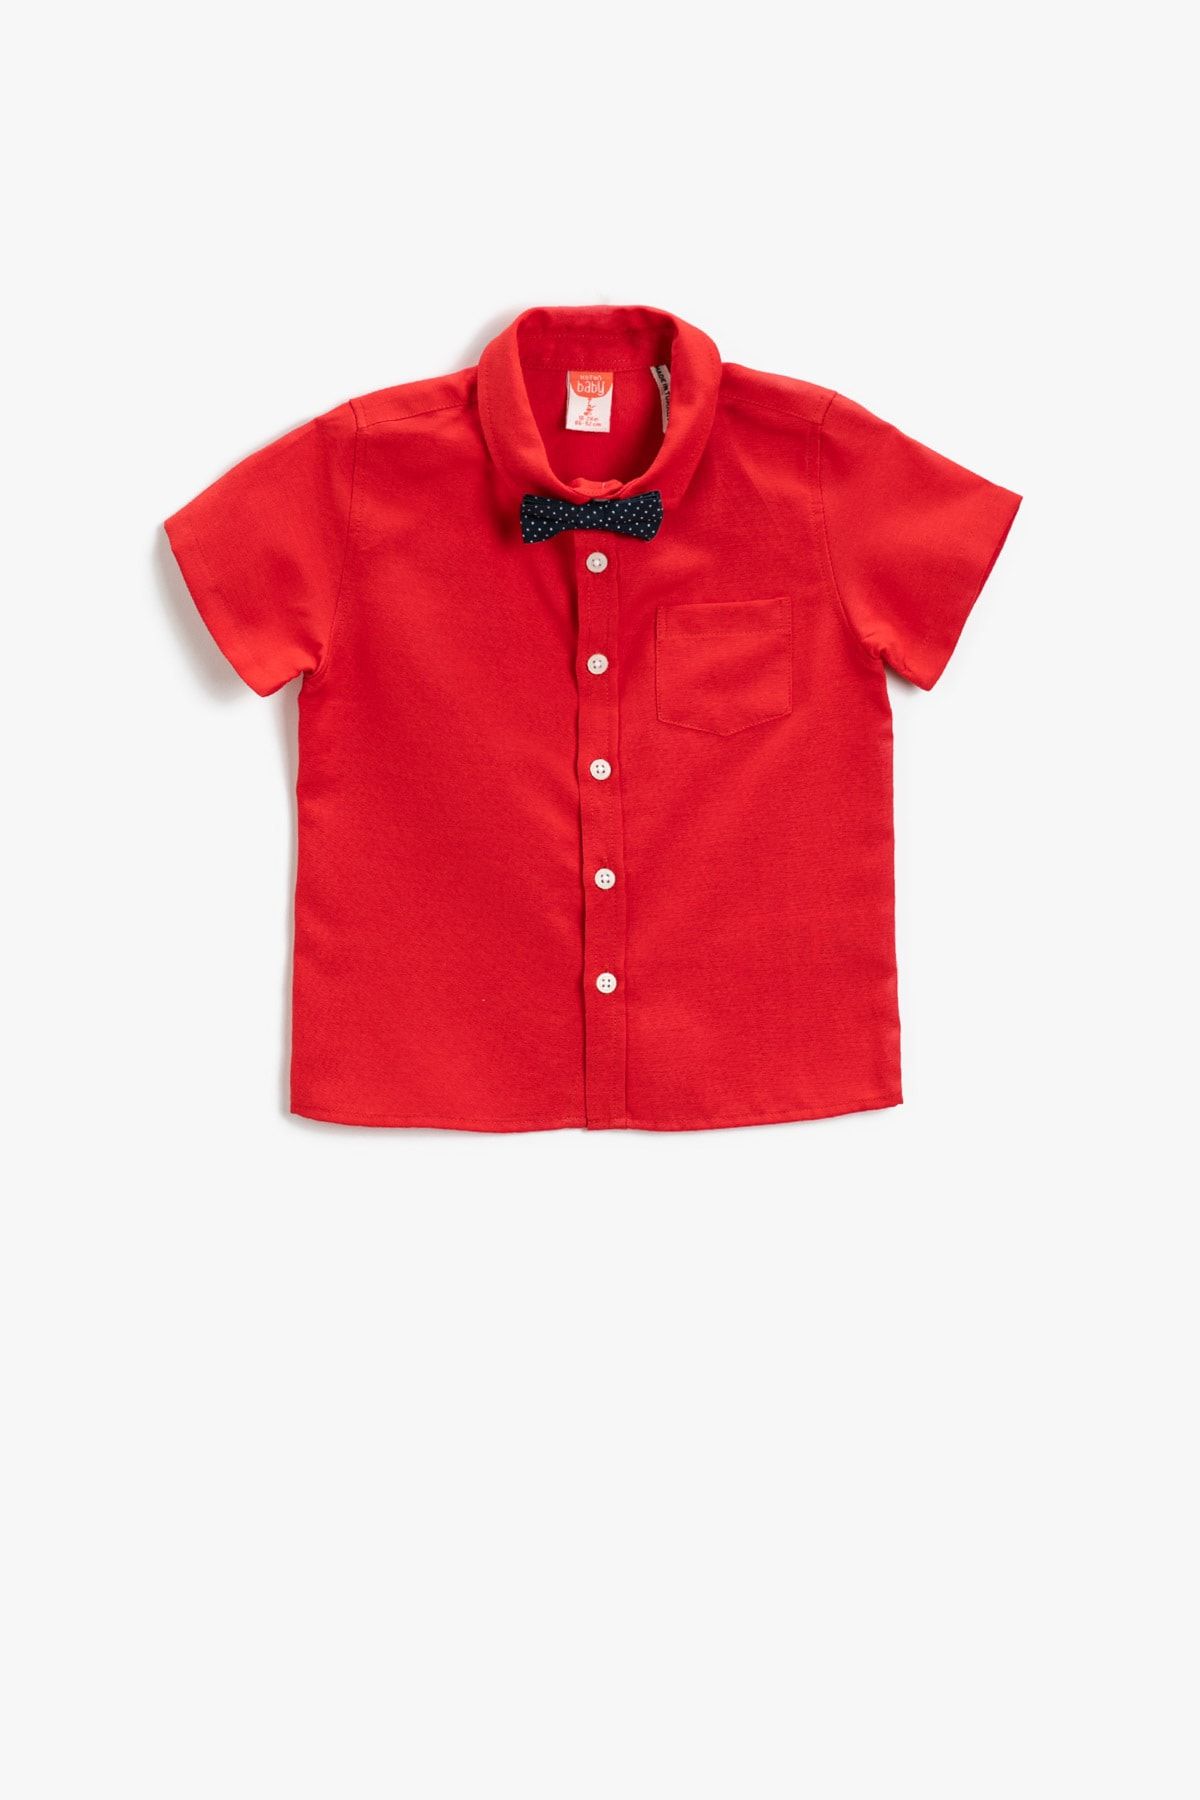 Koton Erkek Bebek Giyim Gömlek 2YMB66010GW Kırmızı Kırmızı